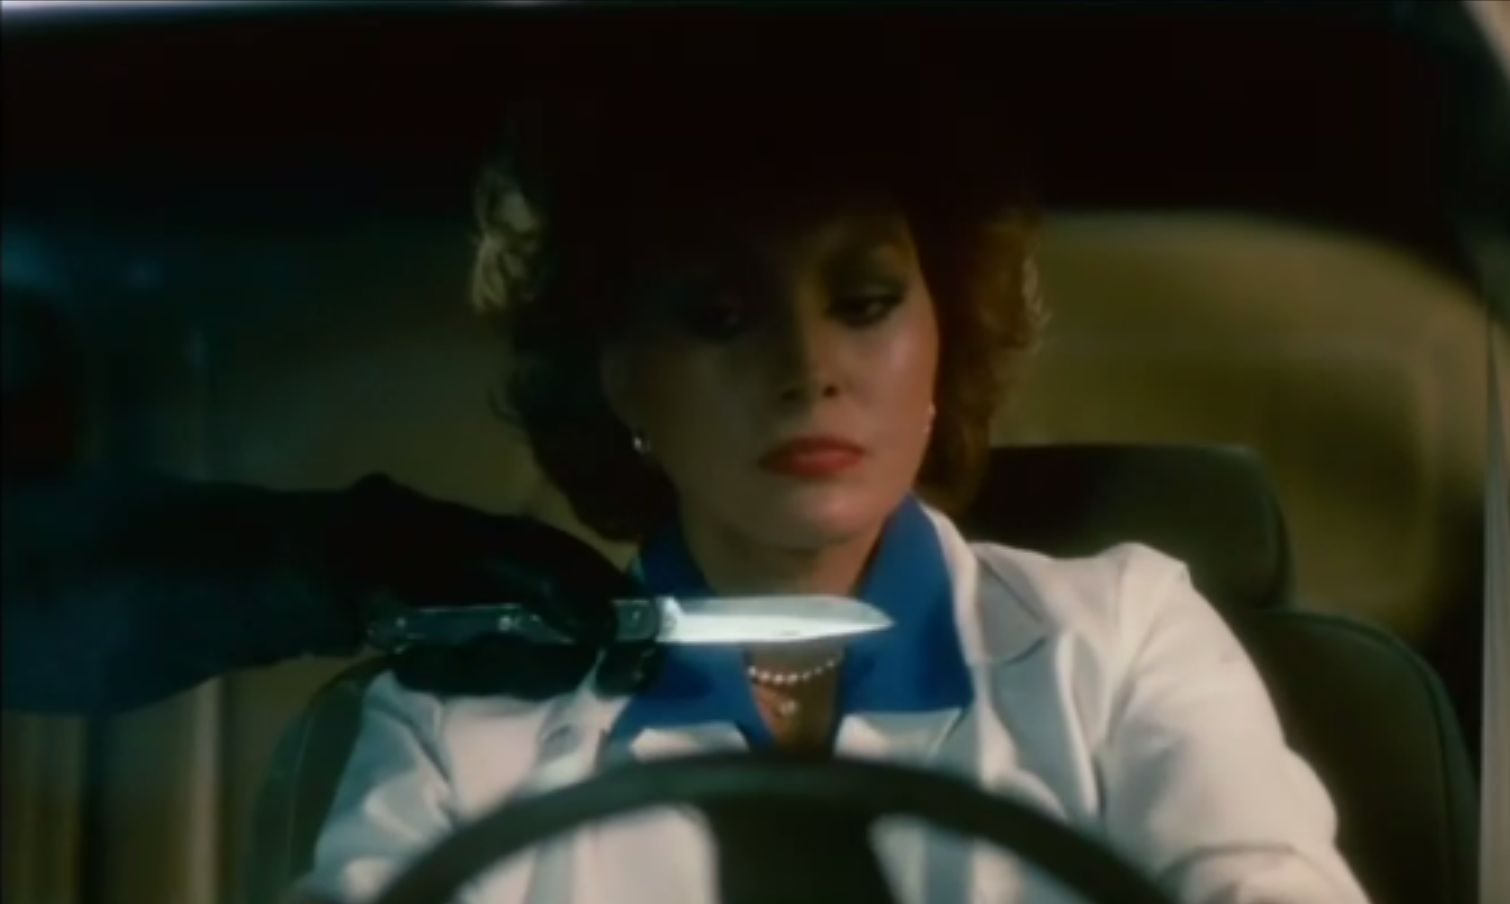 Los placeres ocultos (1989) Screenshot 3 